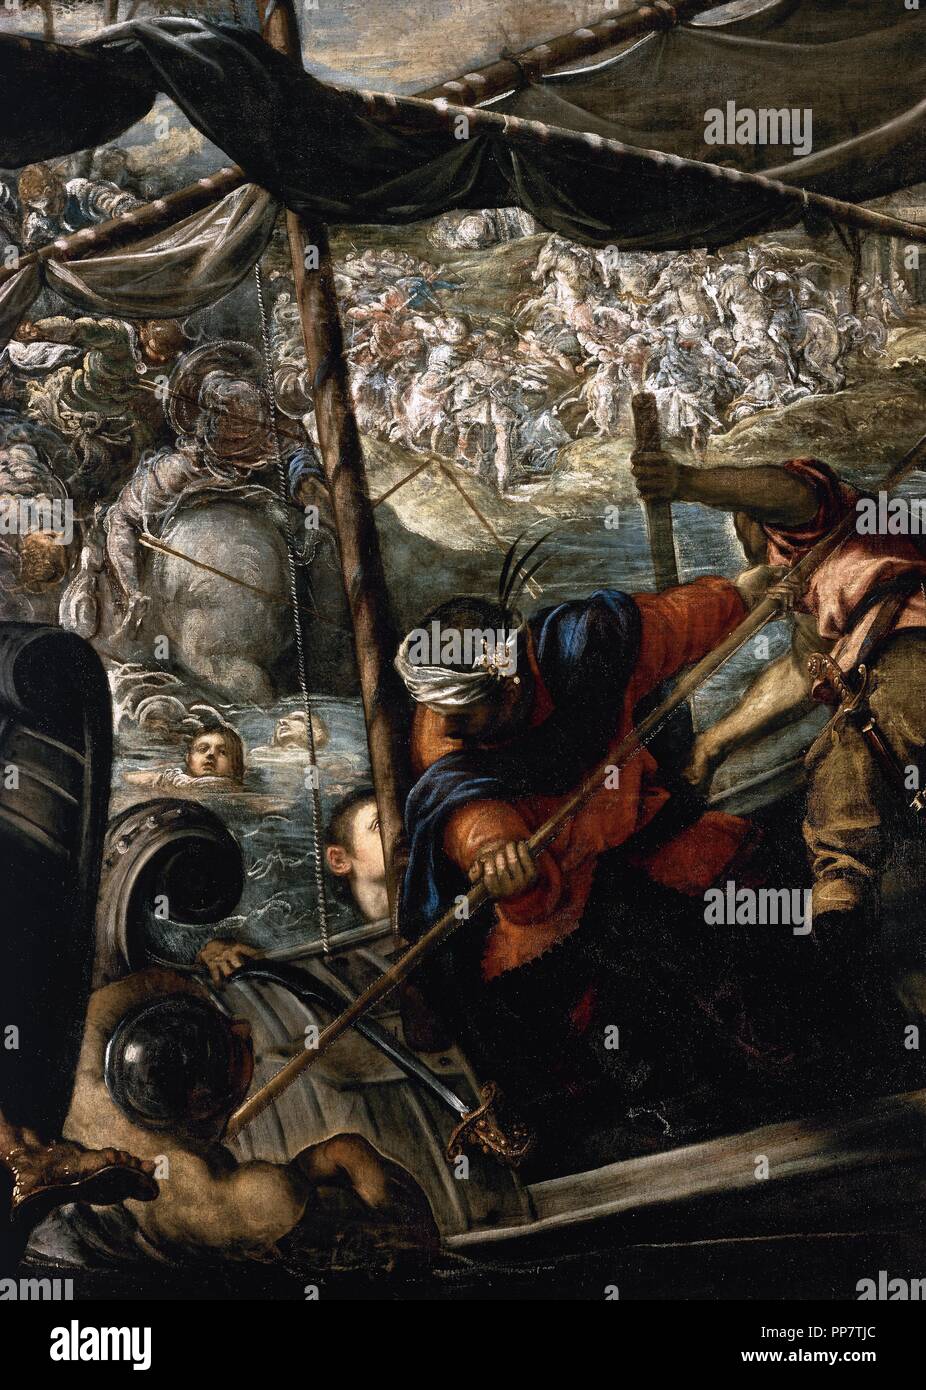 Tintoretto (Jacopo Robusti) (1518-1594). Pittore italiano. Il rapimento di Helen, 1578-1579. Il Museo del Prado. Madrid. Spagna. Foto Stock